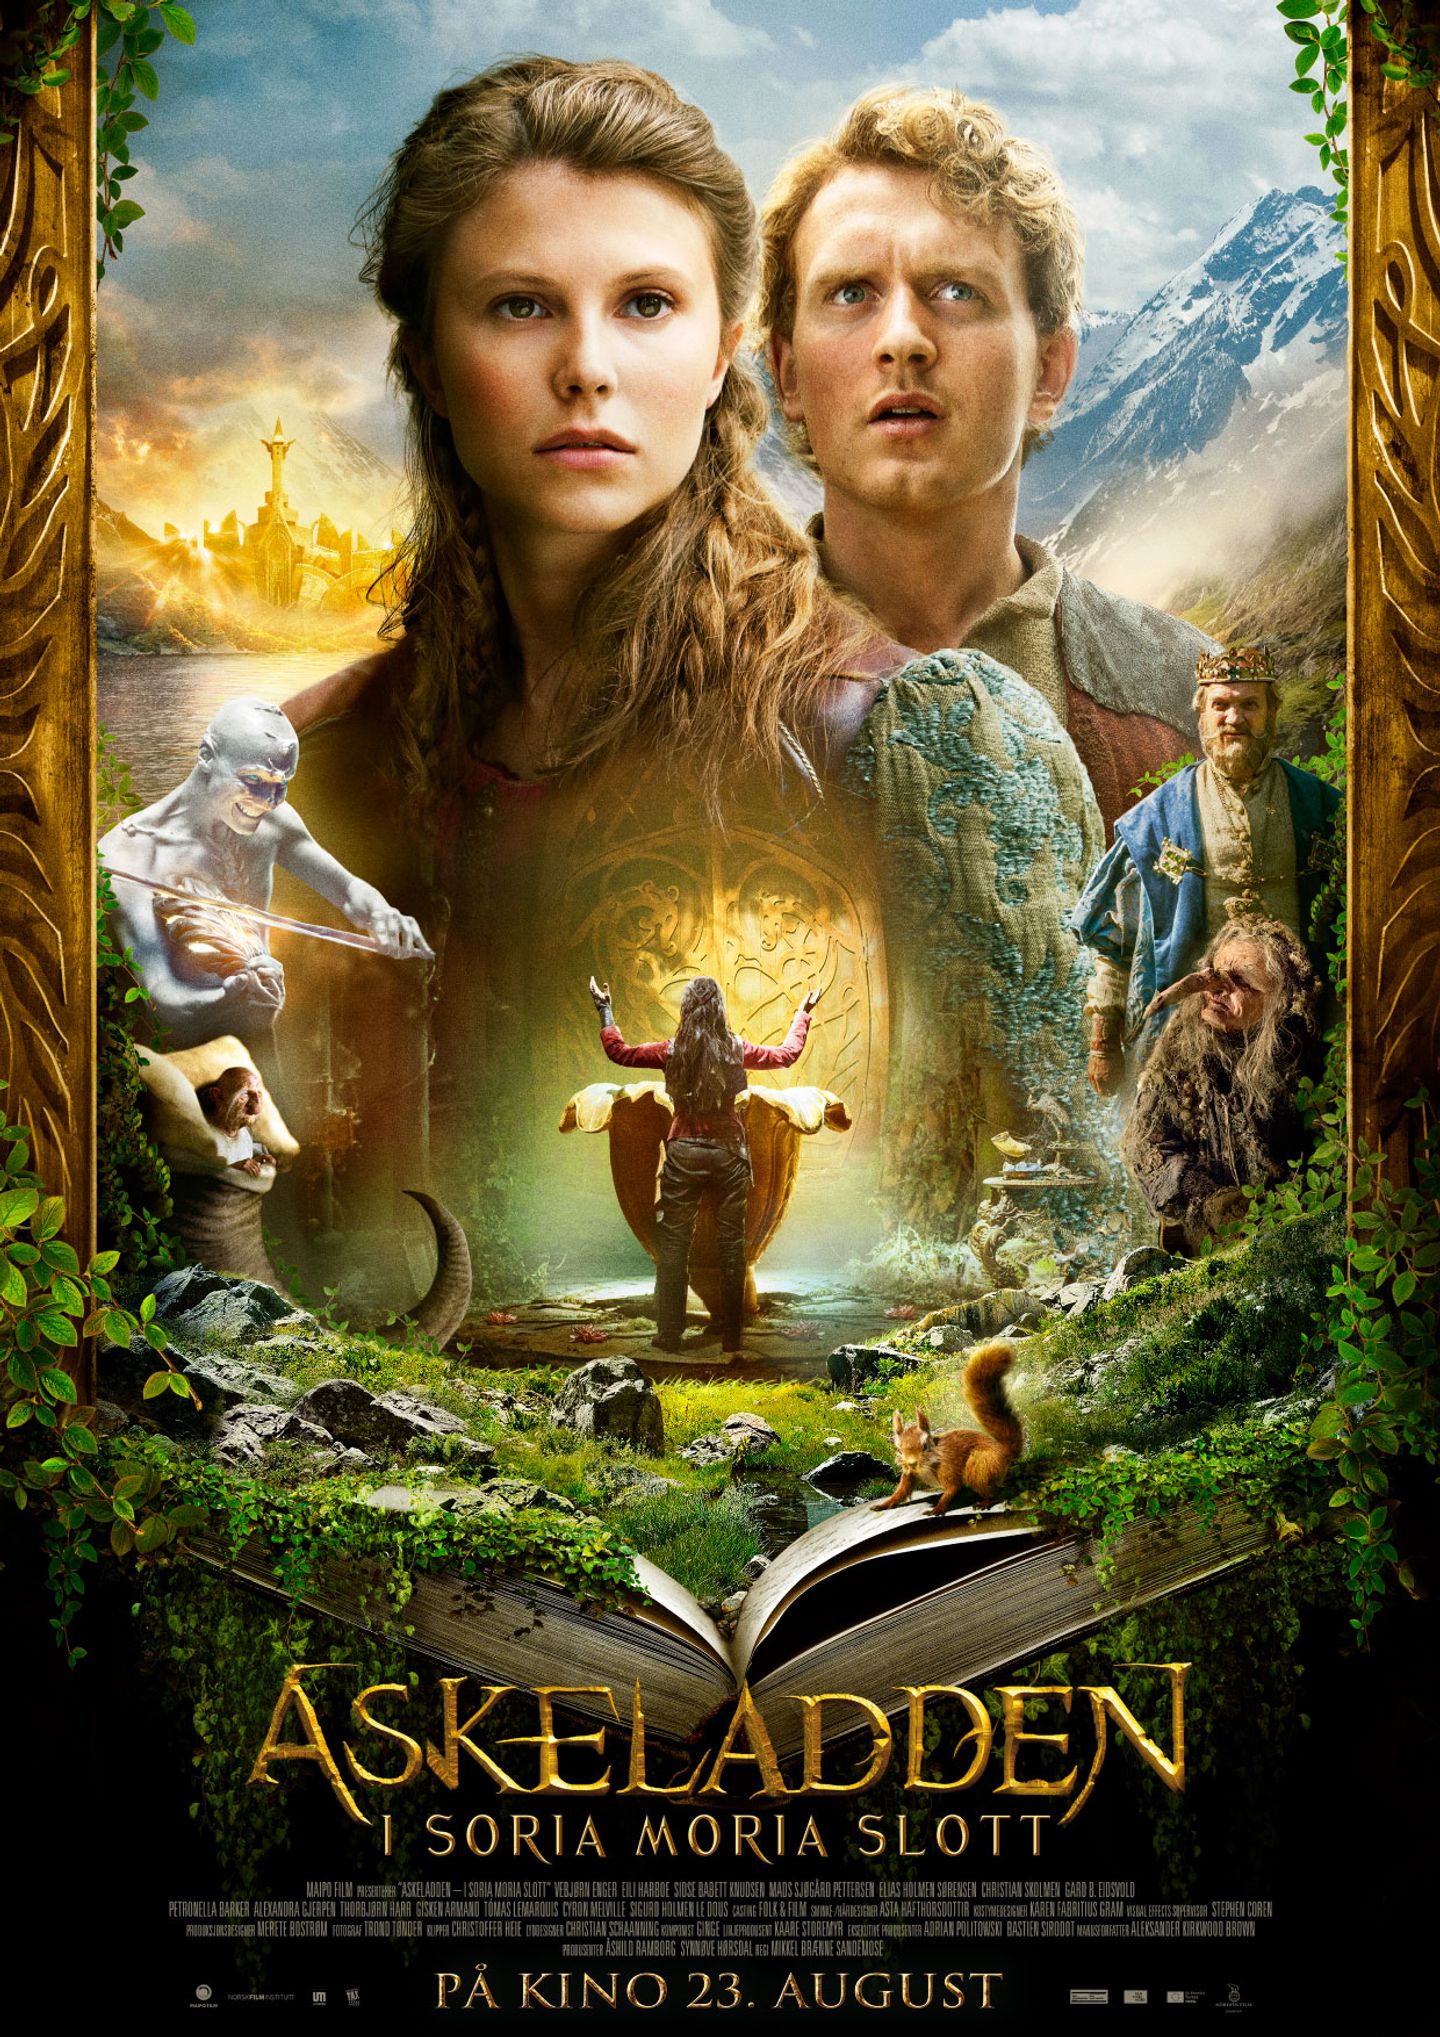 Plakat for 'Askeladden - I Soria Moria slott'